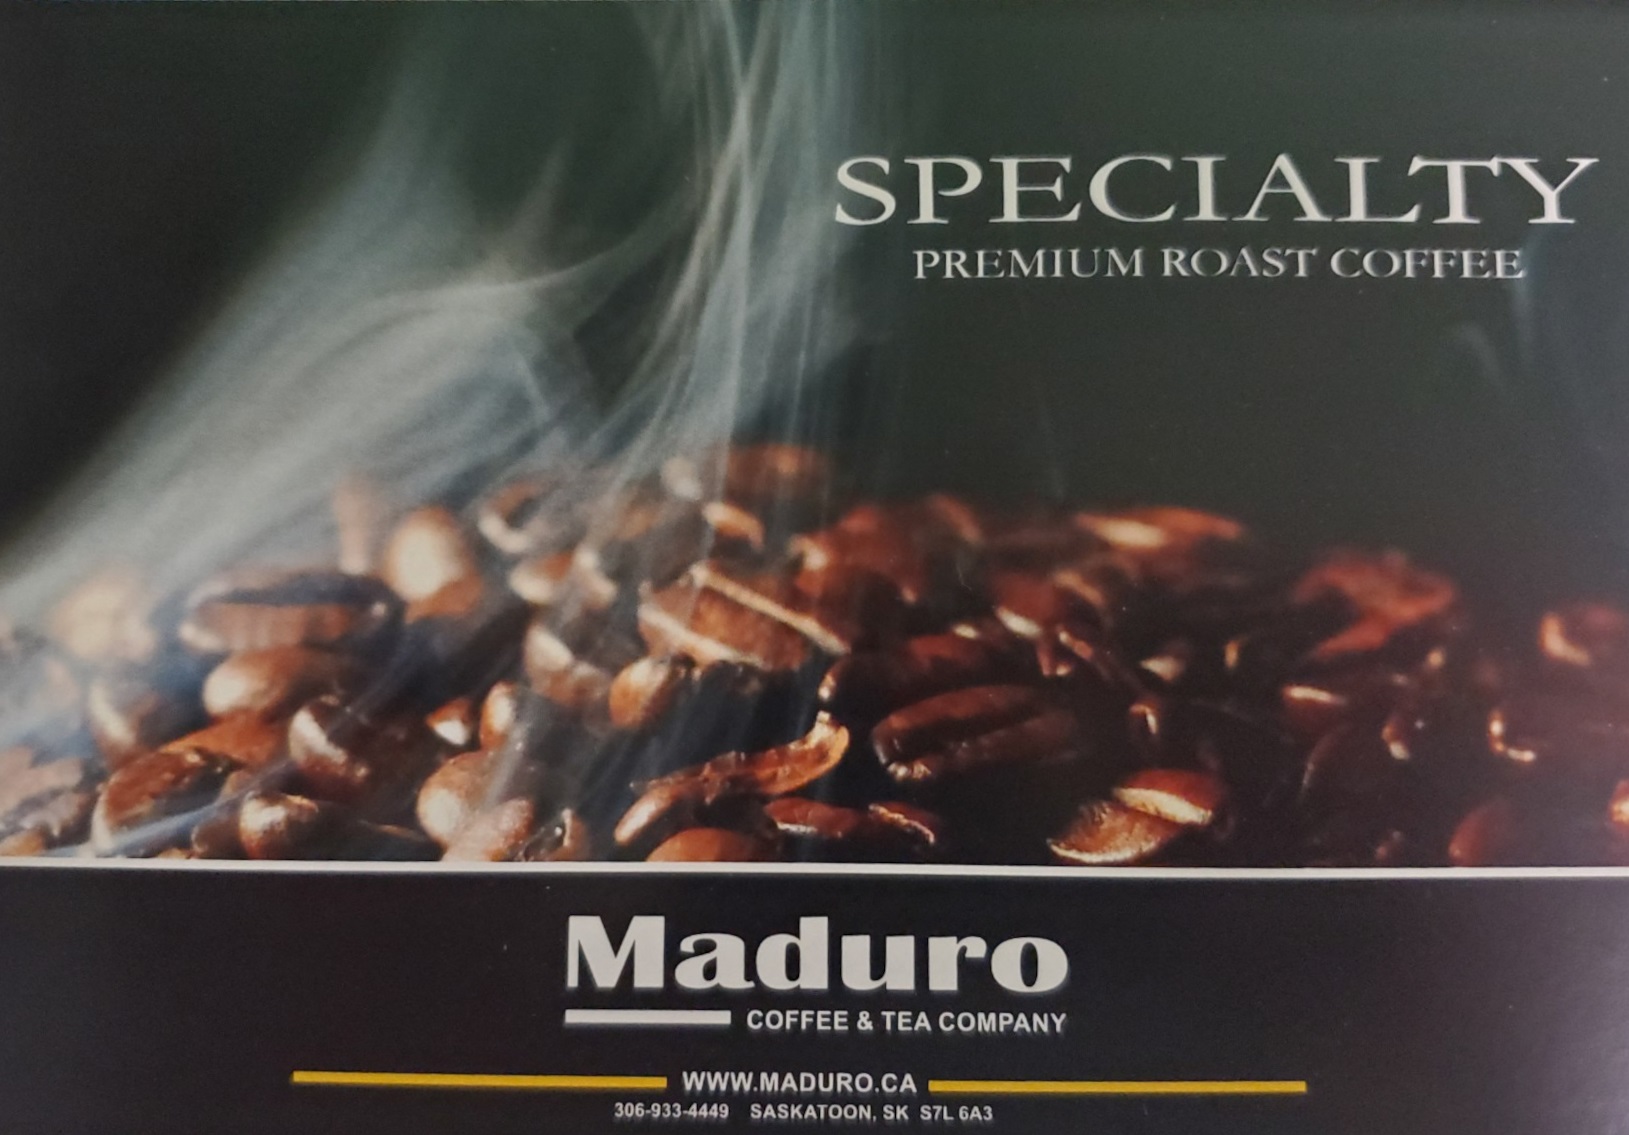 Maduro Coffee & Tea